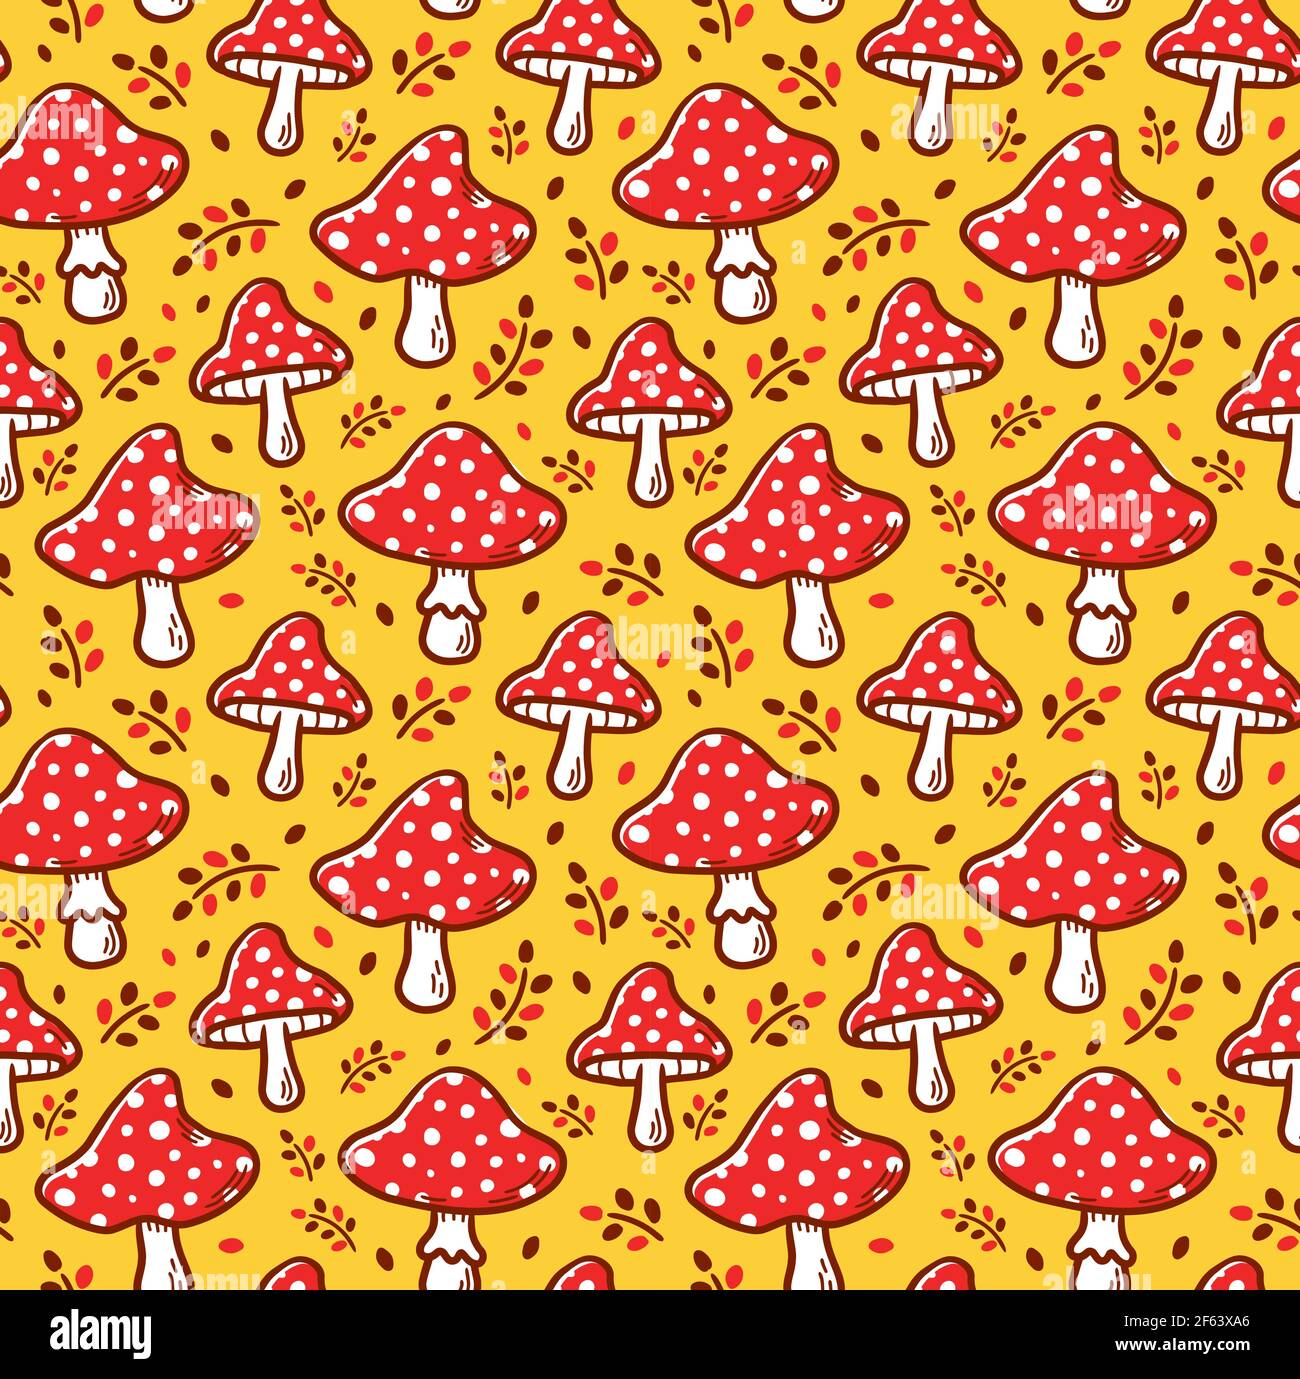 Amanita mushroom seamless pattern. Vector cartoon illustration icon design. Amanita mushroom seamless pattern concept Stock Vector